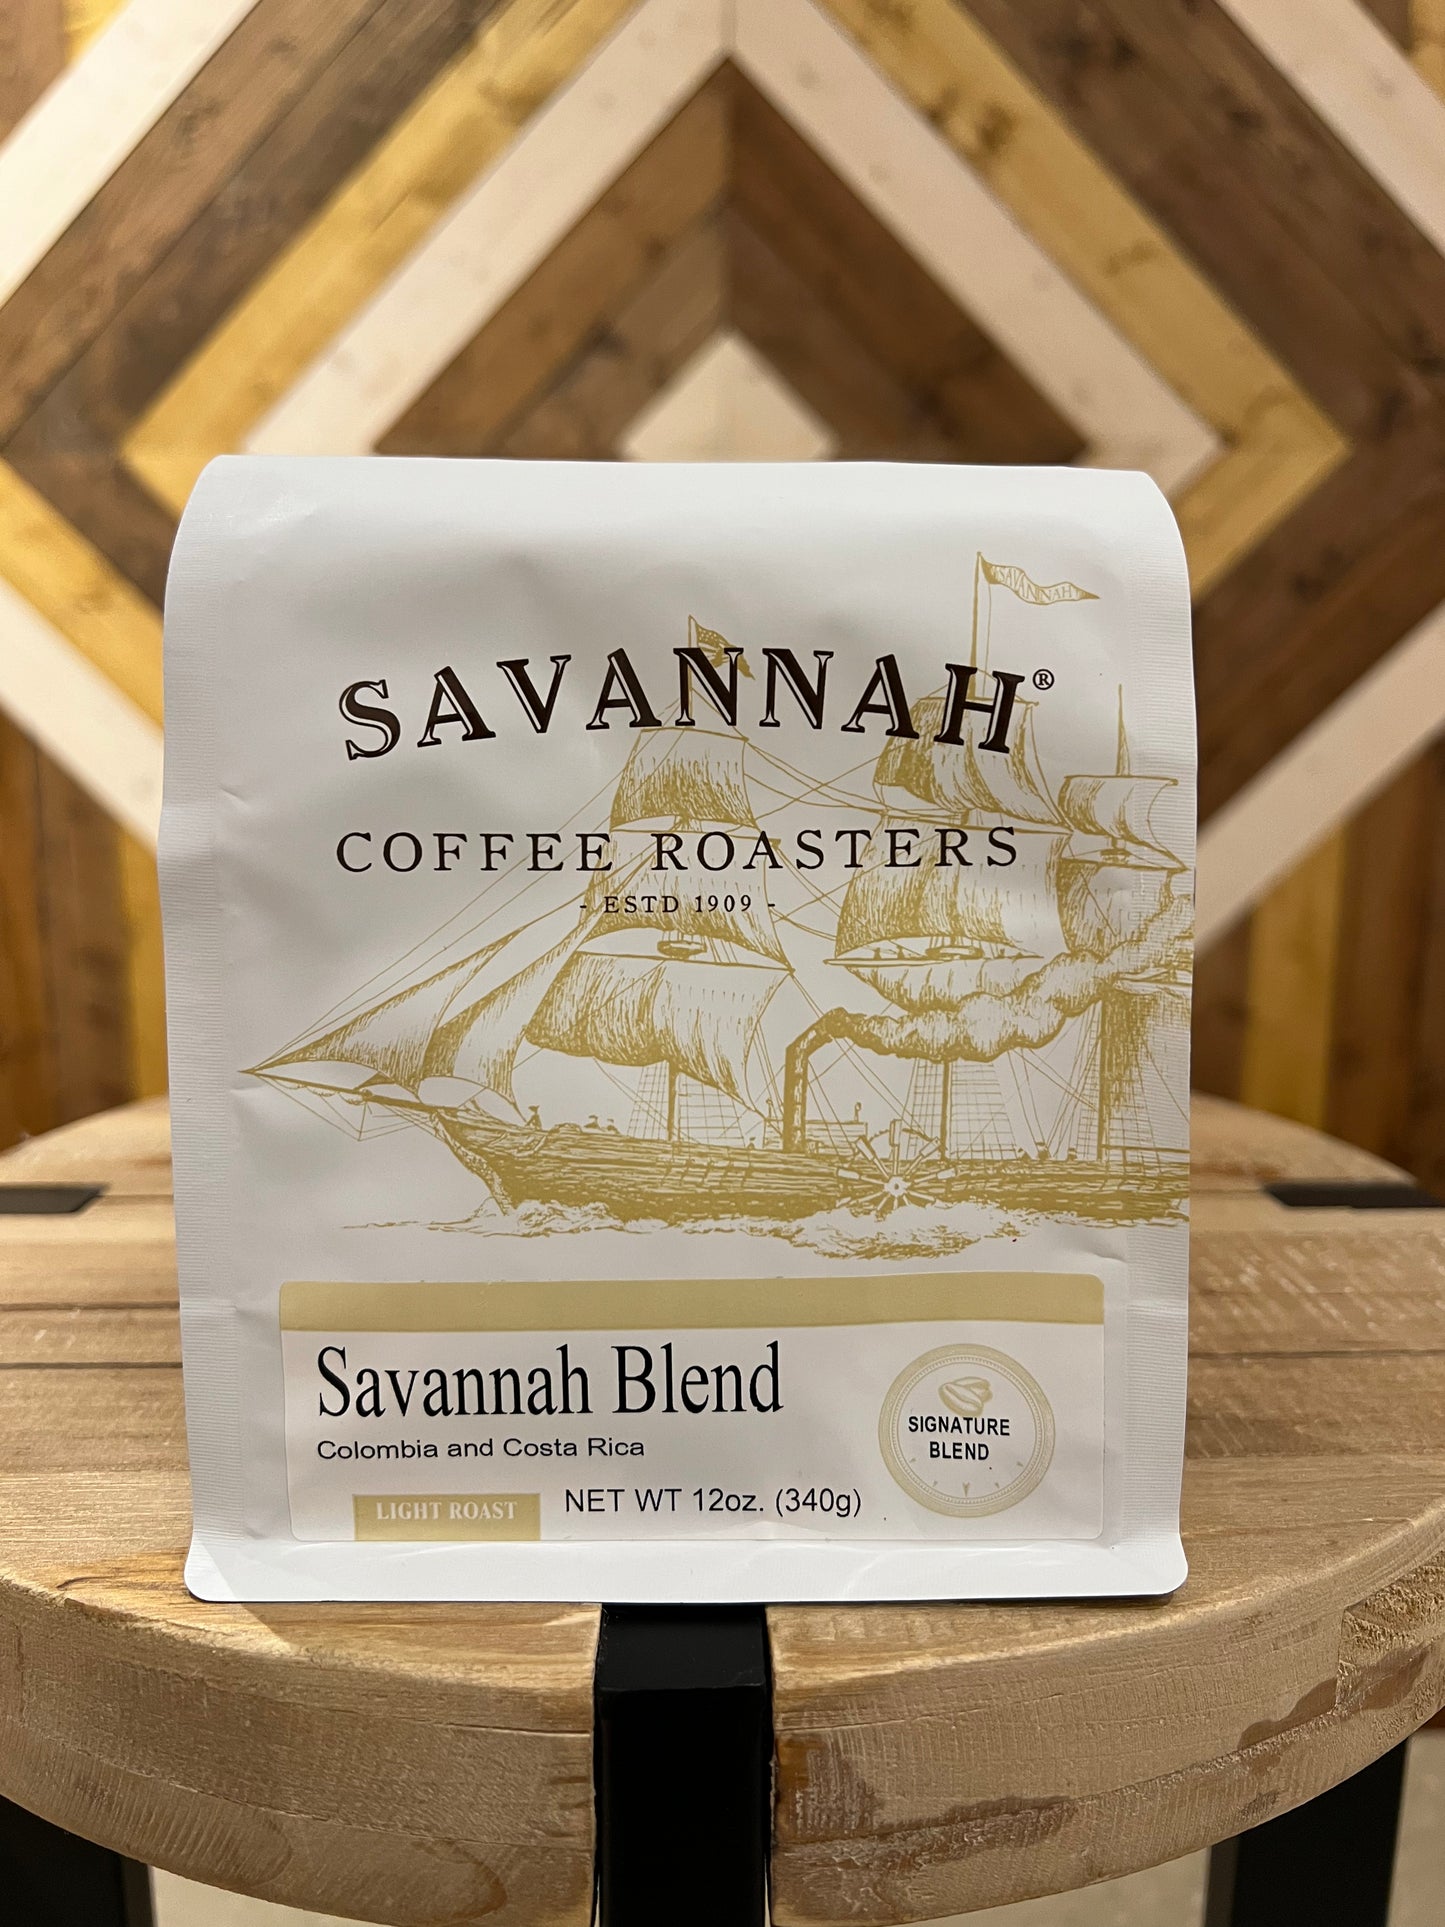 Savannah Coffee Roasters Bagged Coffees